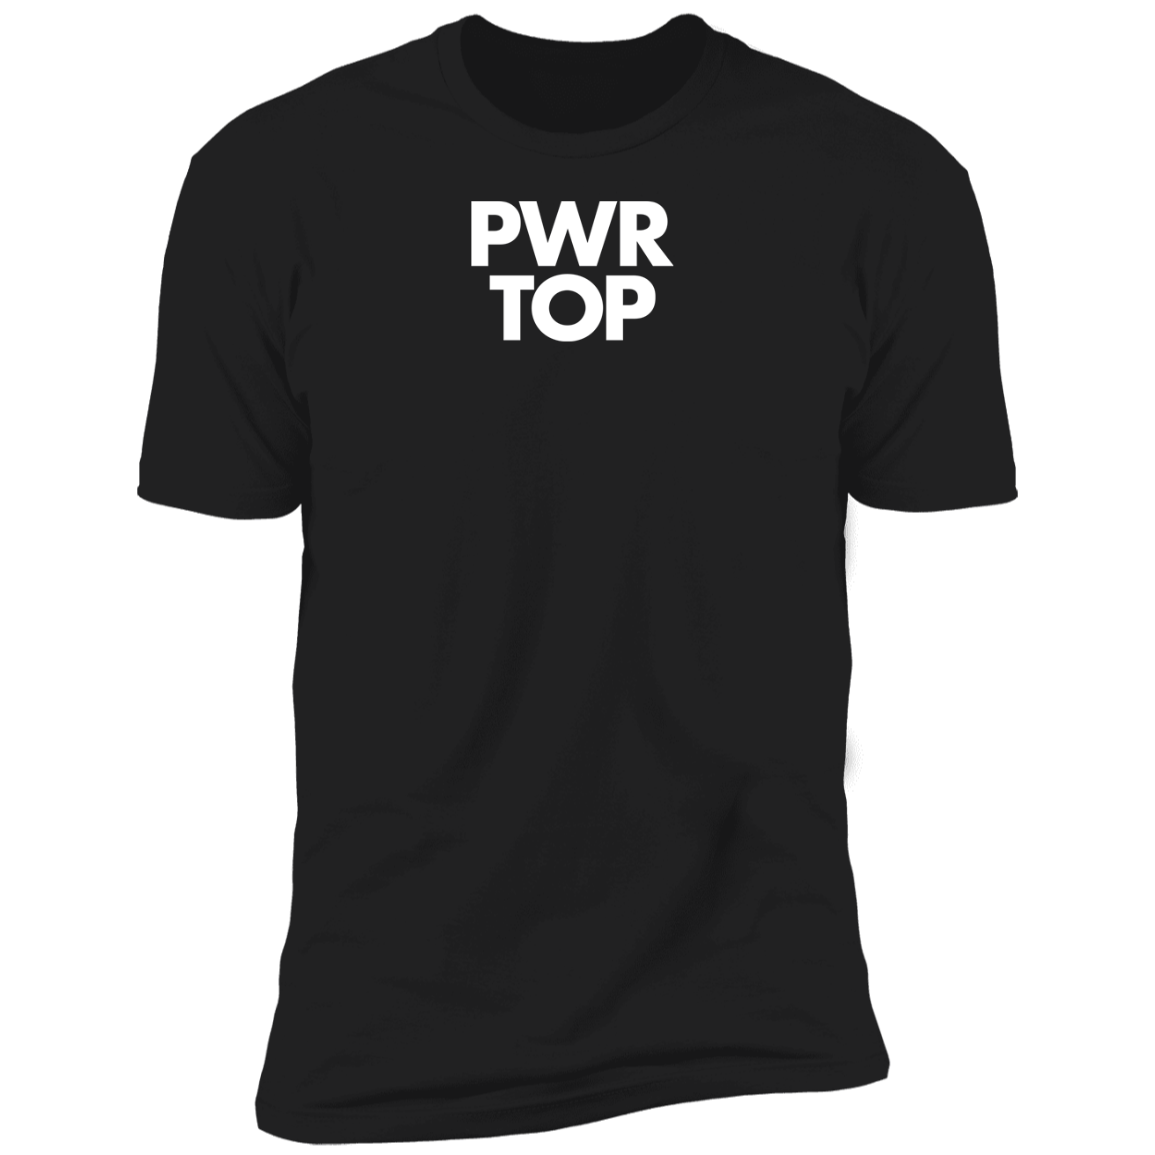 Hustler PWR TOP T-Shirt